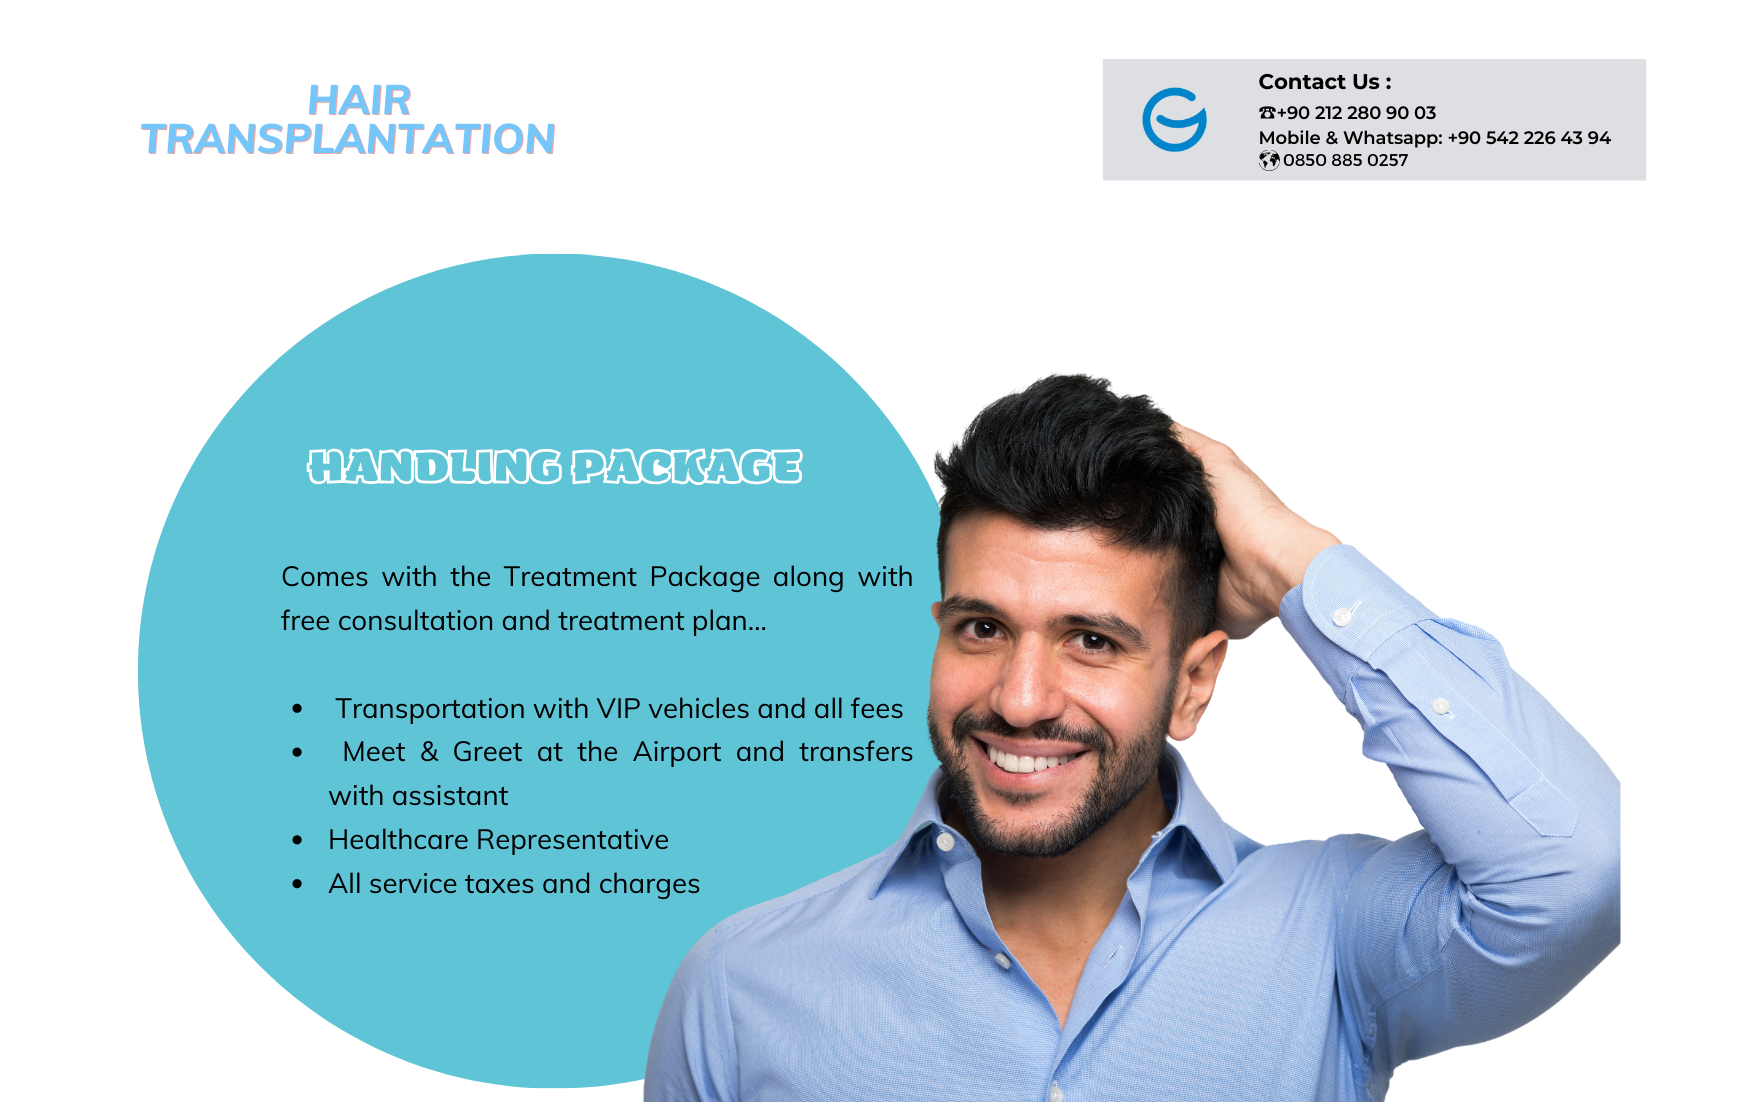 Hair Transplantation Package – Handling Pack